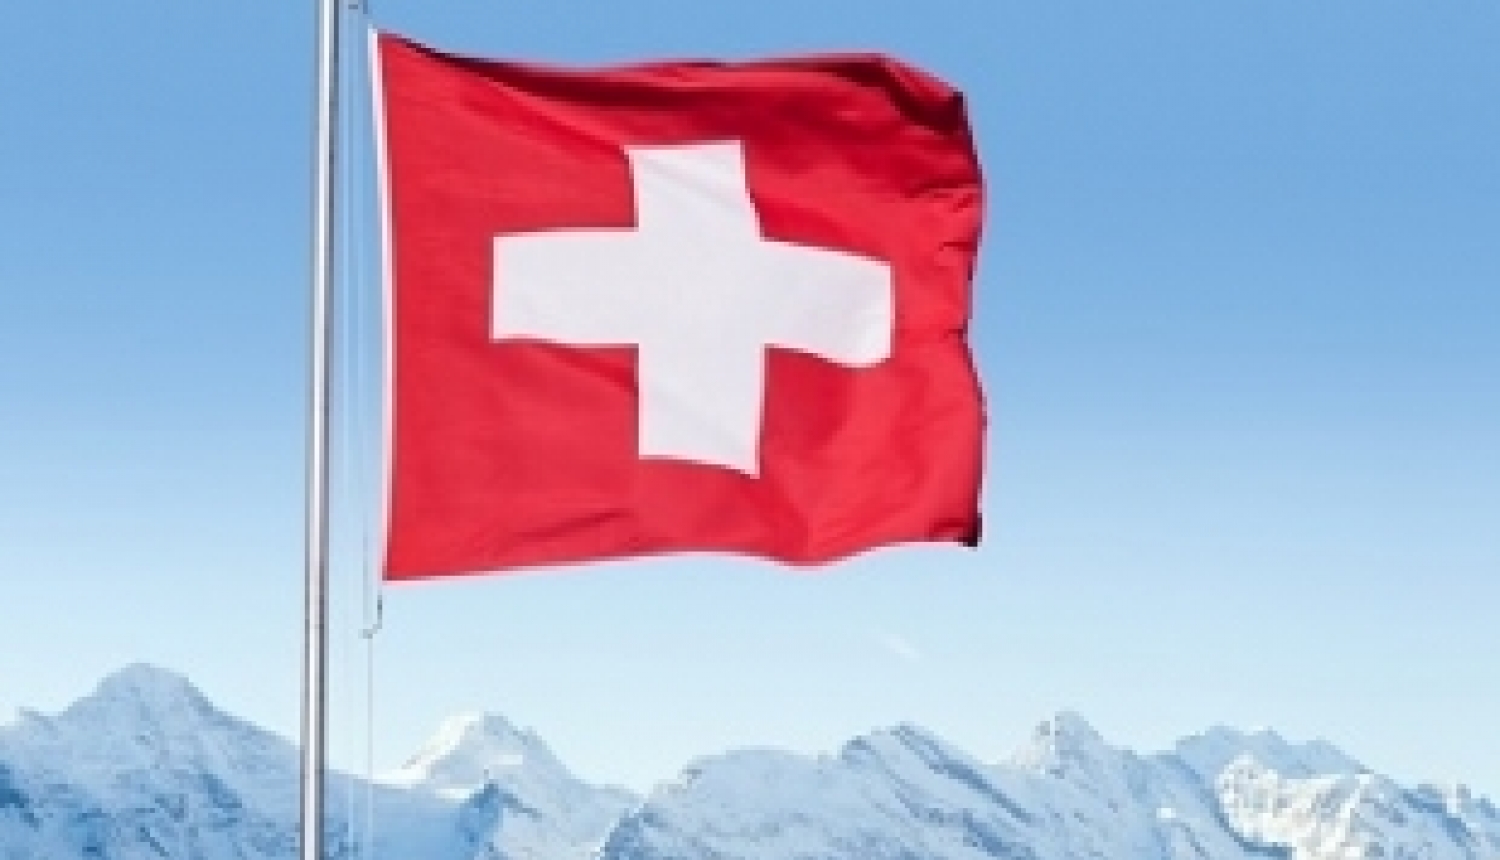 Iespēja pieteikties Šveices valdības izcilības stipendijai